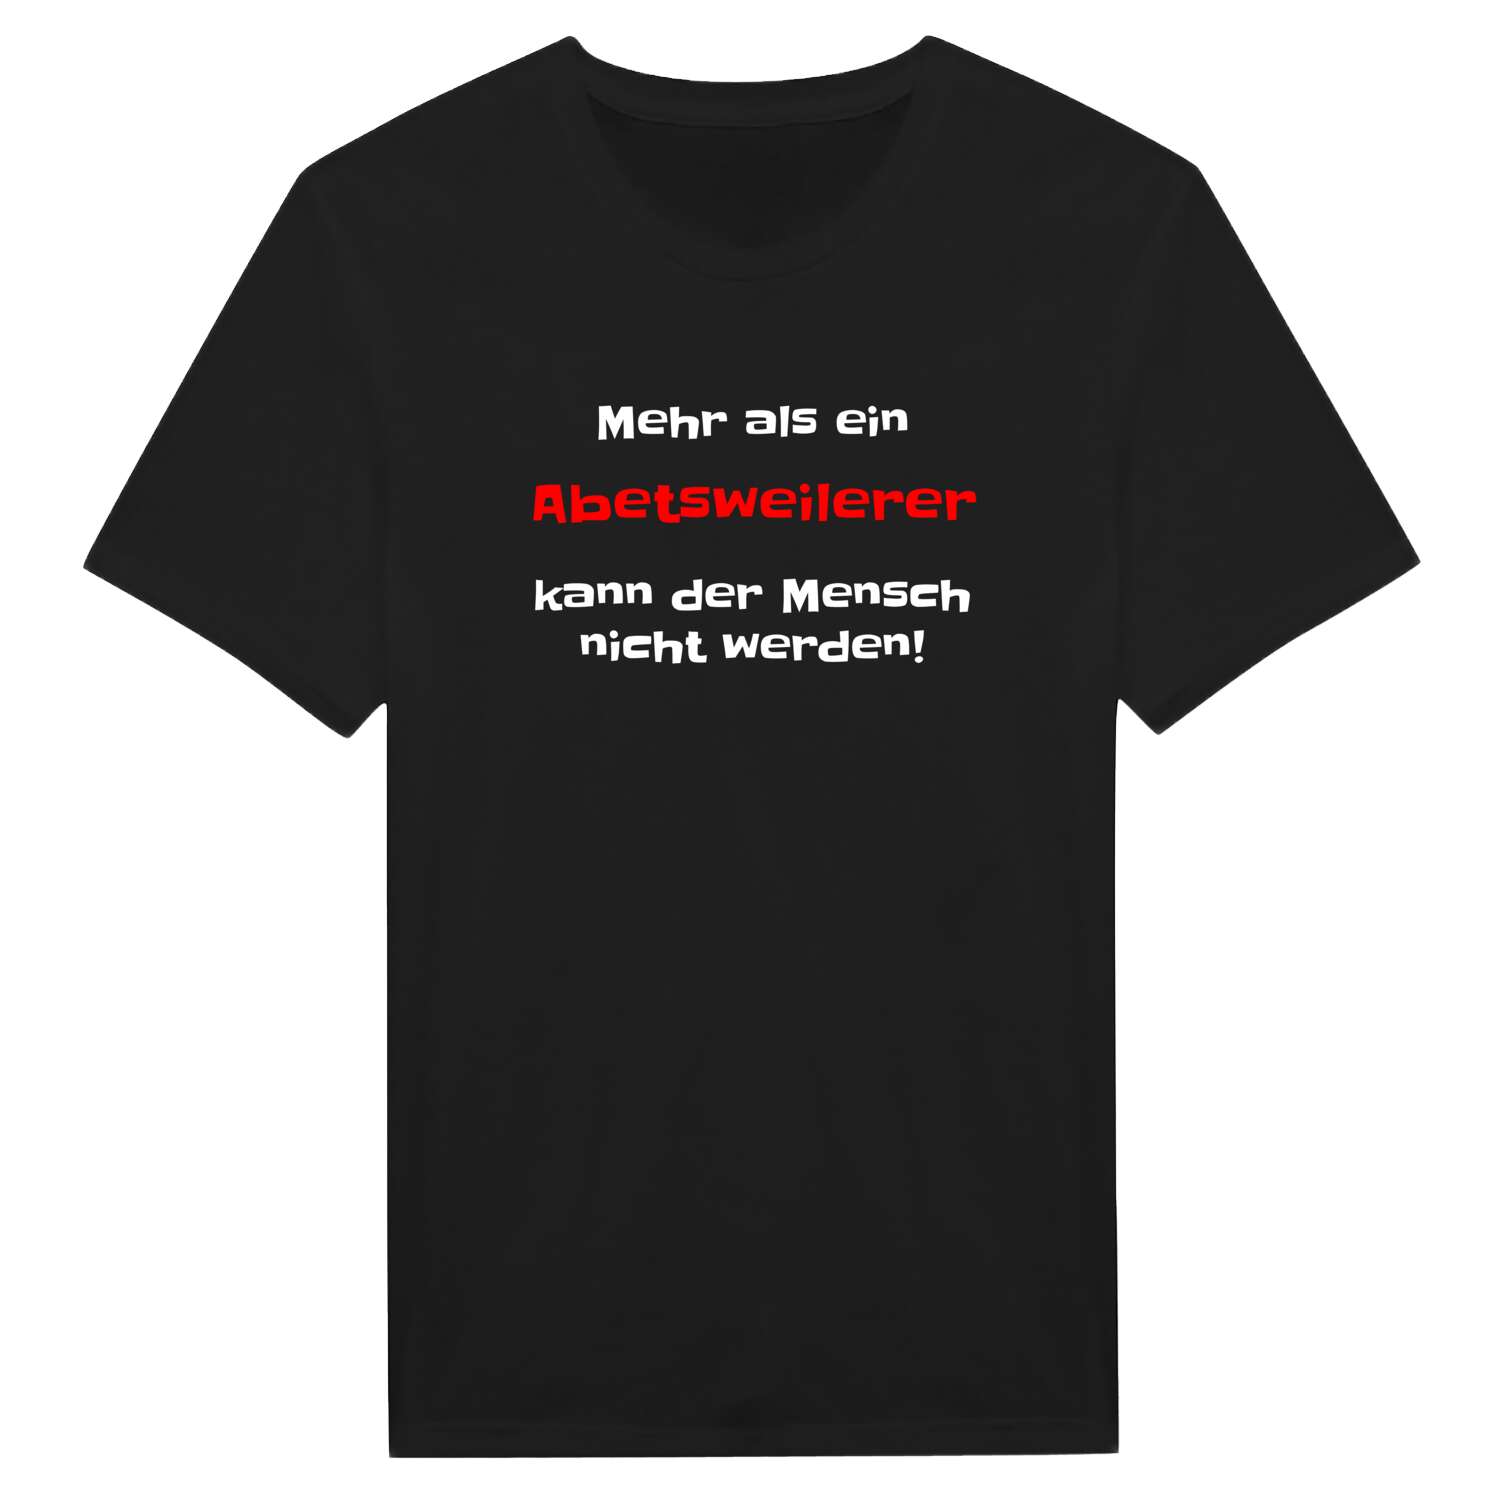 Abetsweiler T-Shirt »Mehr als ein«